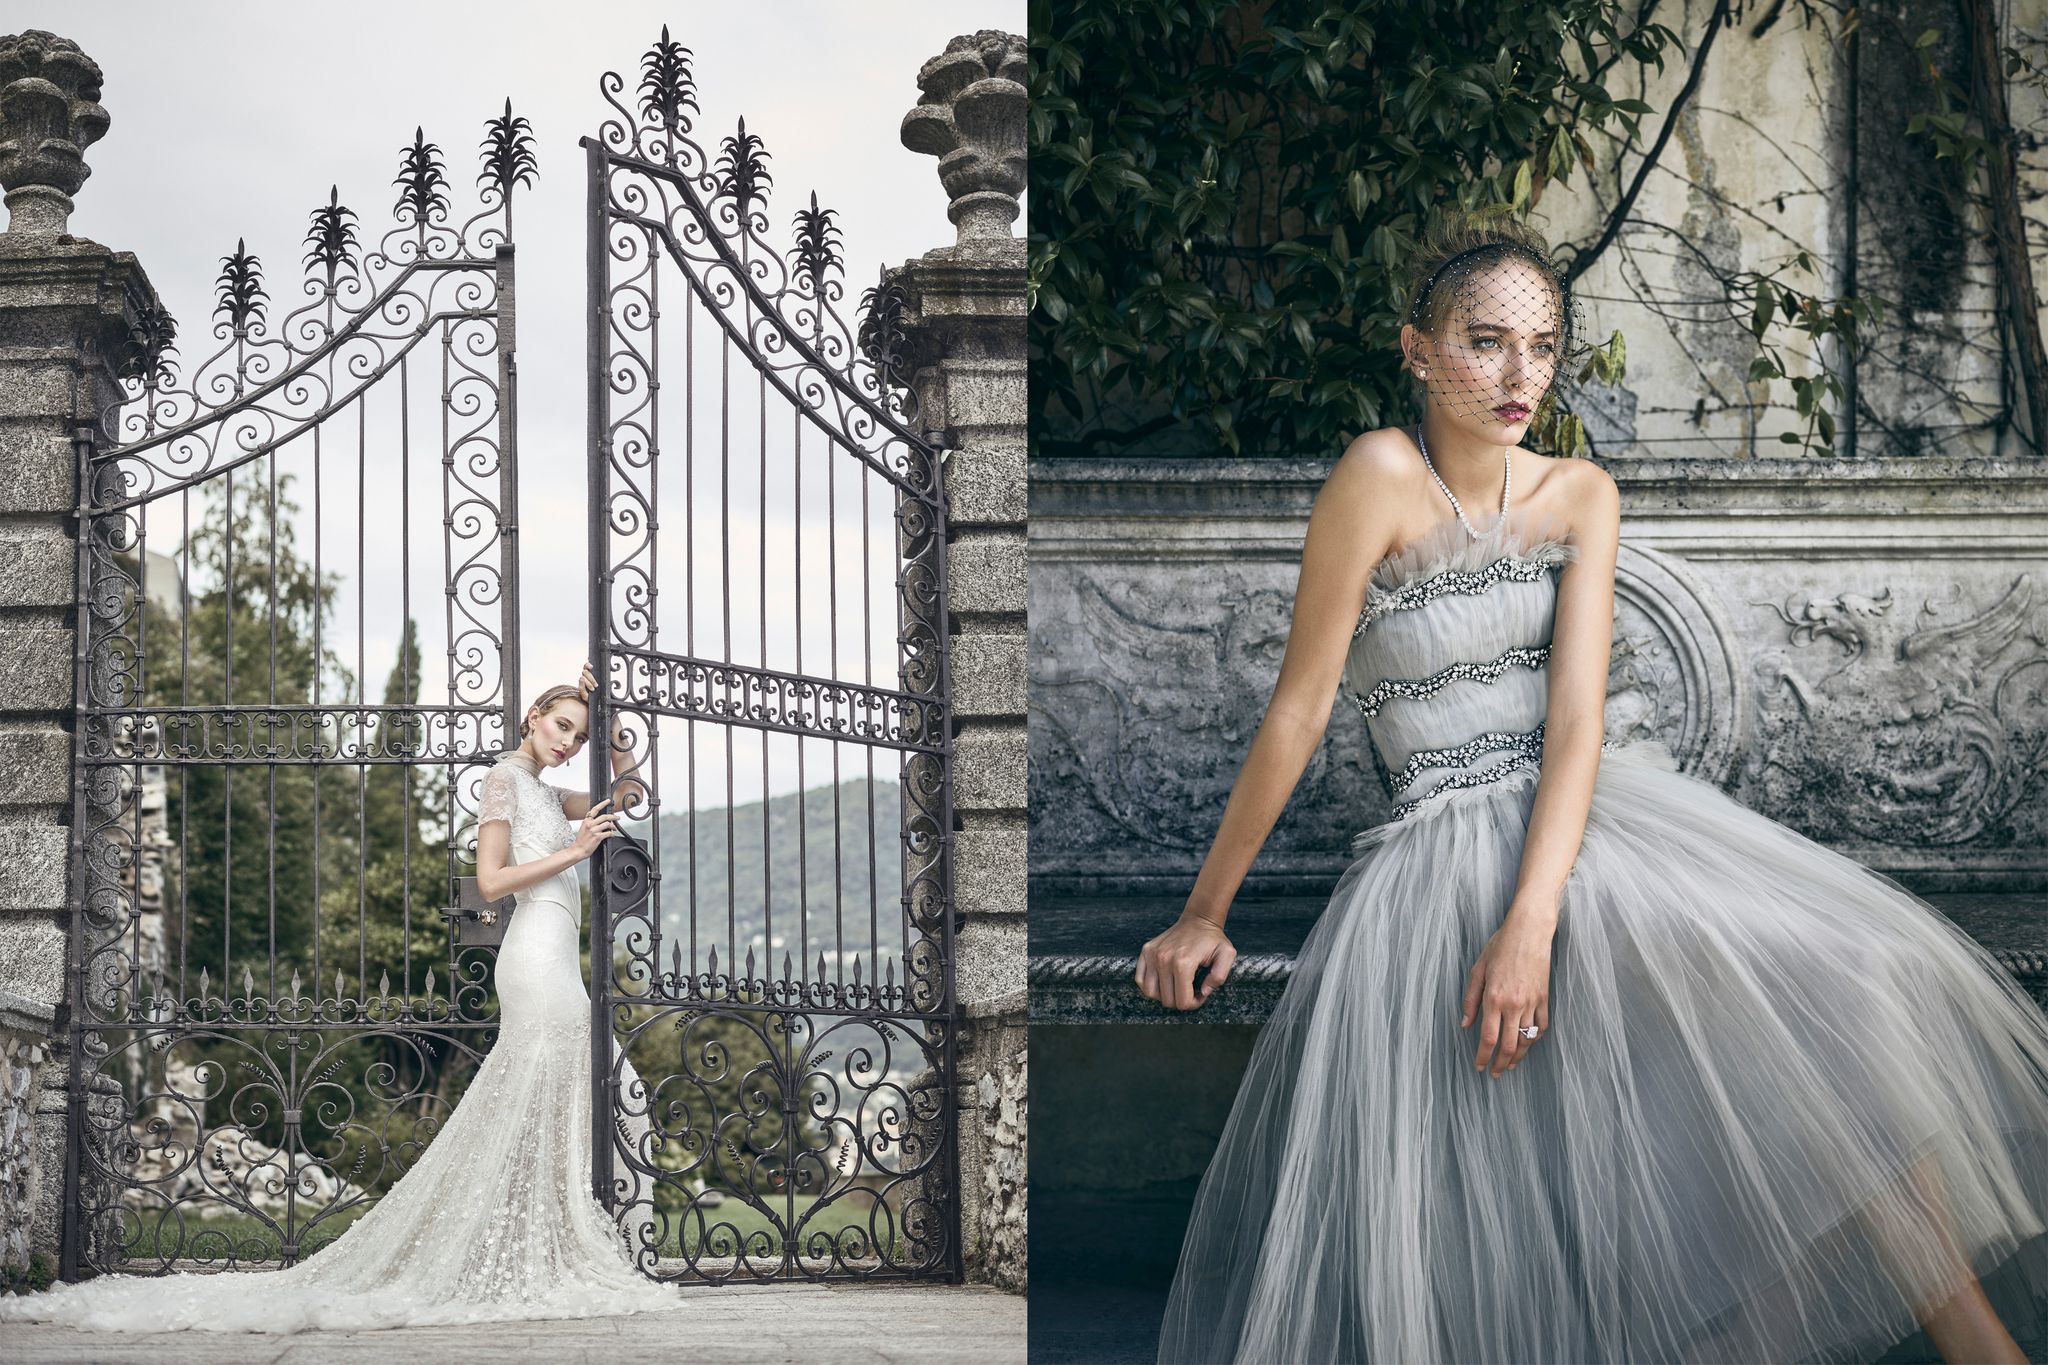 Lady Corset Dress ~ Garden Romantic  Floral bridesmaid dresses, Bridesmaid  dresses, Printed bridesmaid dresses